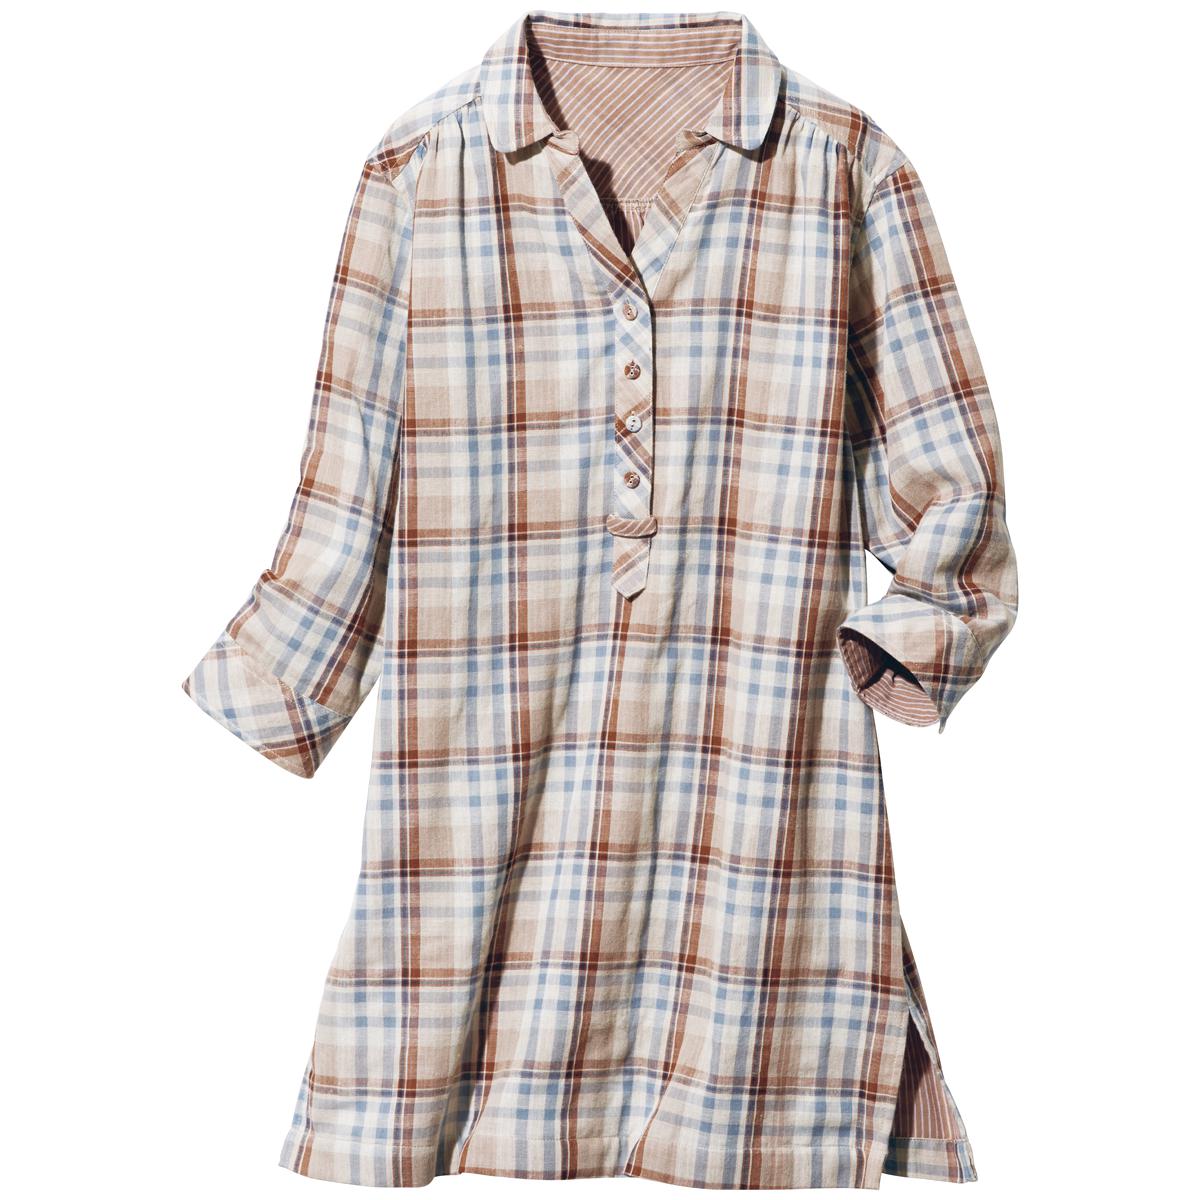 ダブルガーゼスキッパーチュニックシャツ(綿100%・洗濯機OK) - ファッション通販ならセシール(cecile)